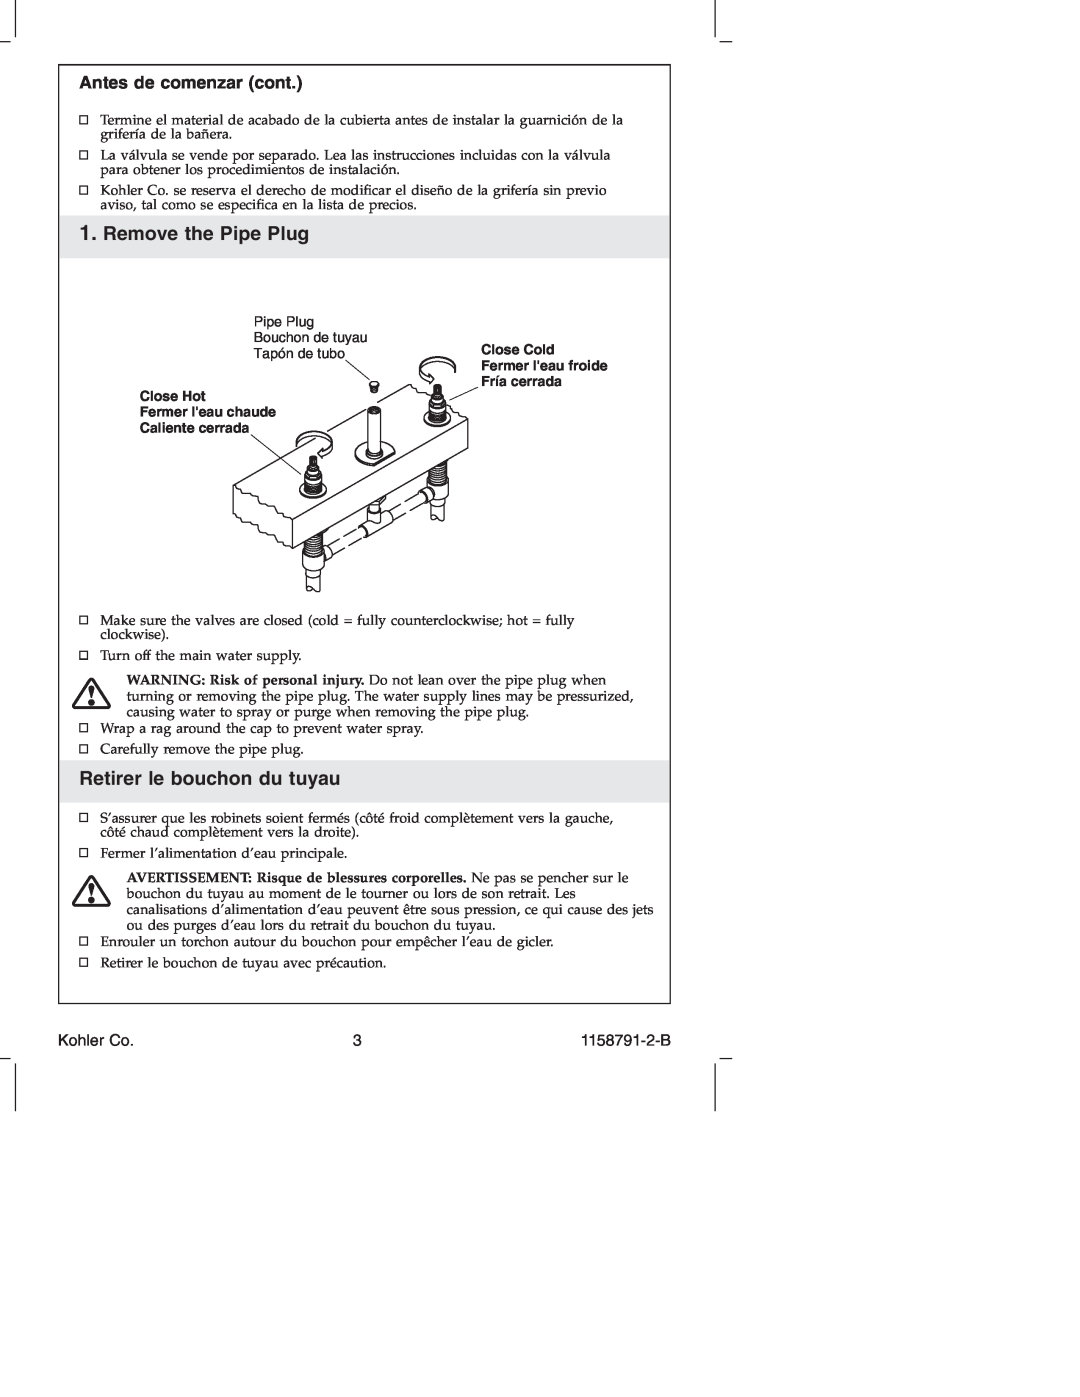 Kohler K-T 45115 manual Remove the Pipe Plug, Retirer le bouchon du tuyau, Antes de comenzar cont, Kohler Co 